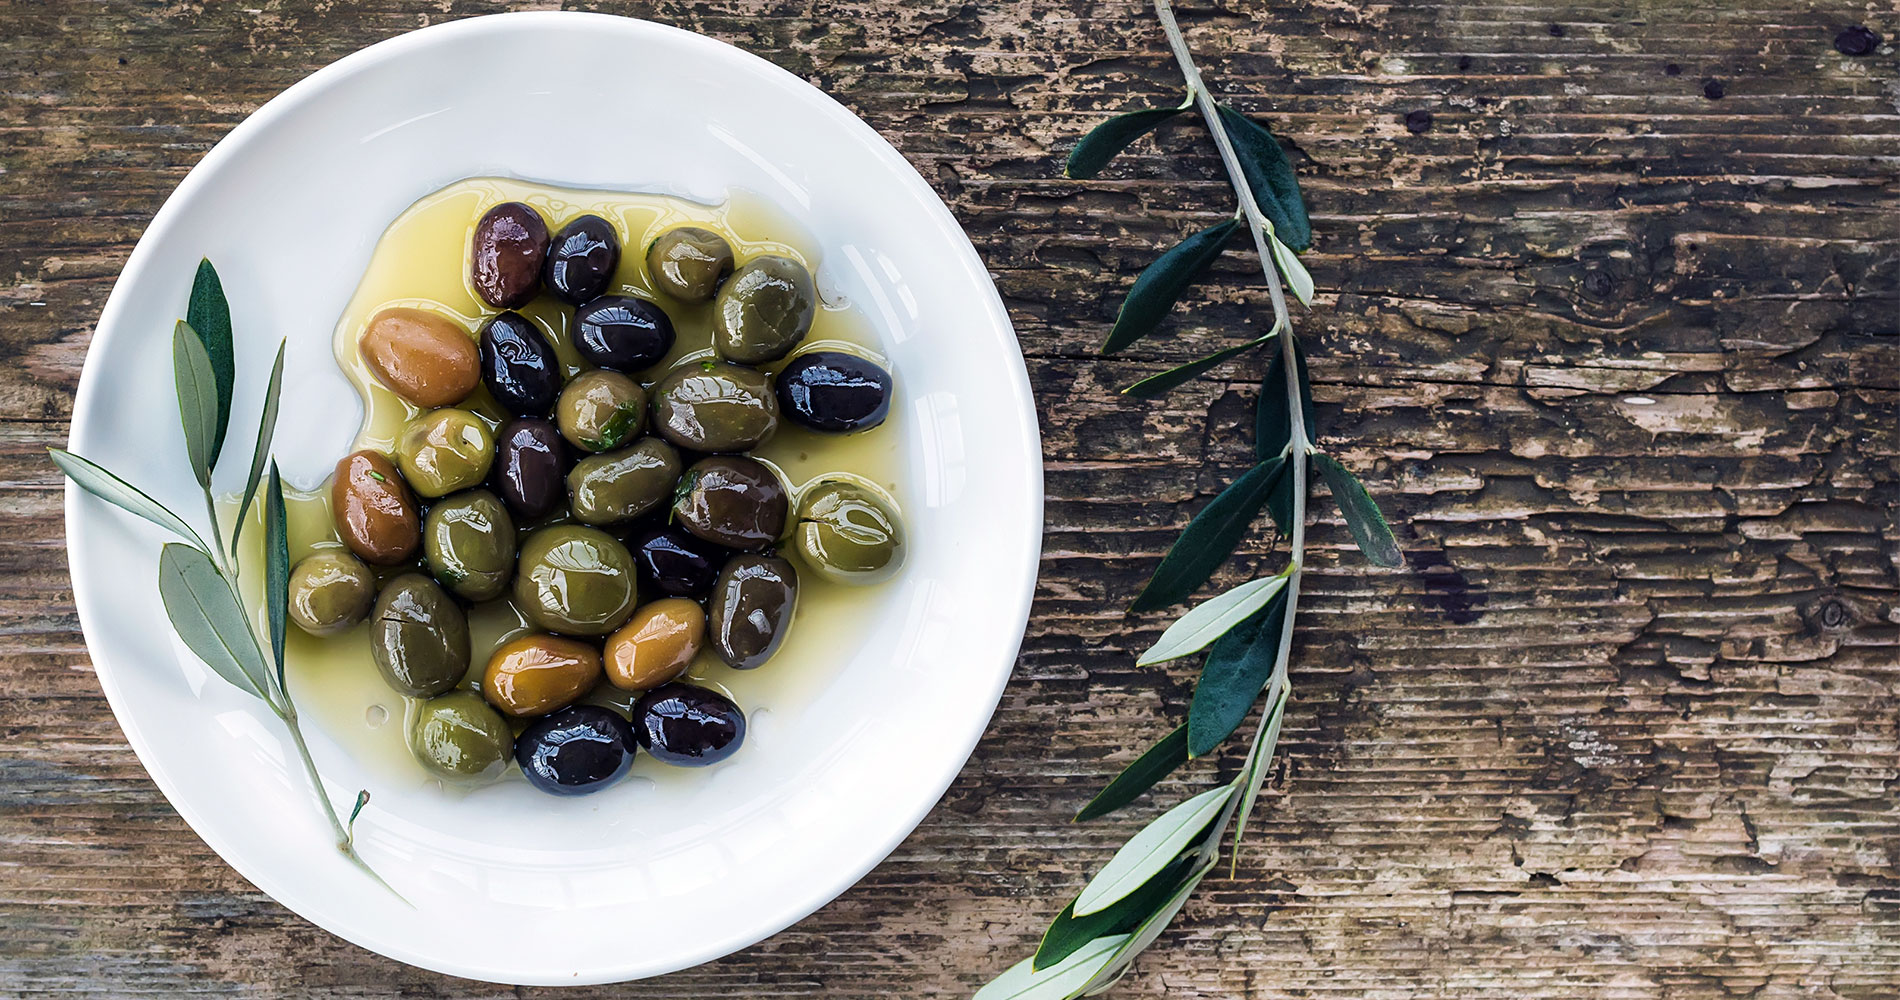 Let’s Talk About the Mediterranean Diet